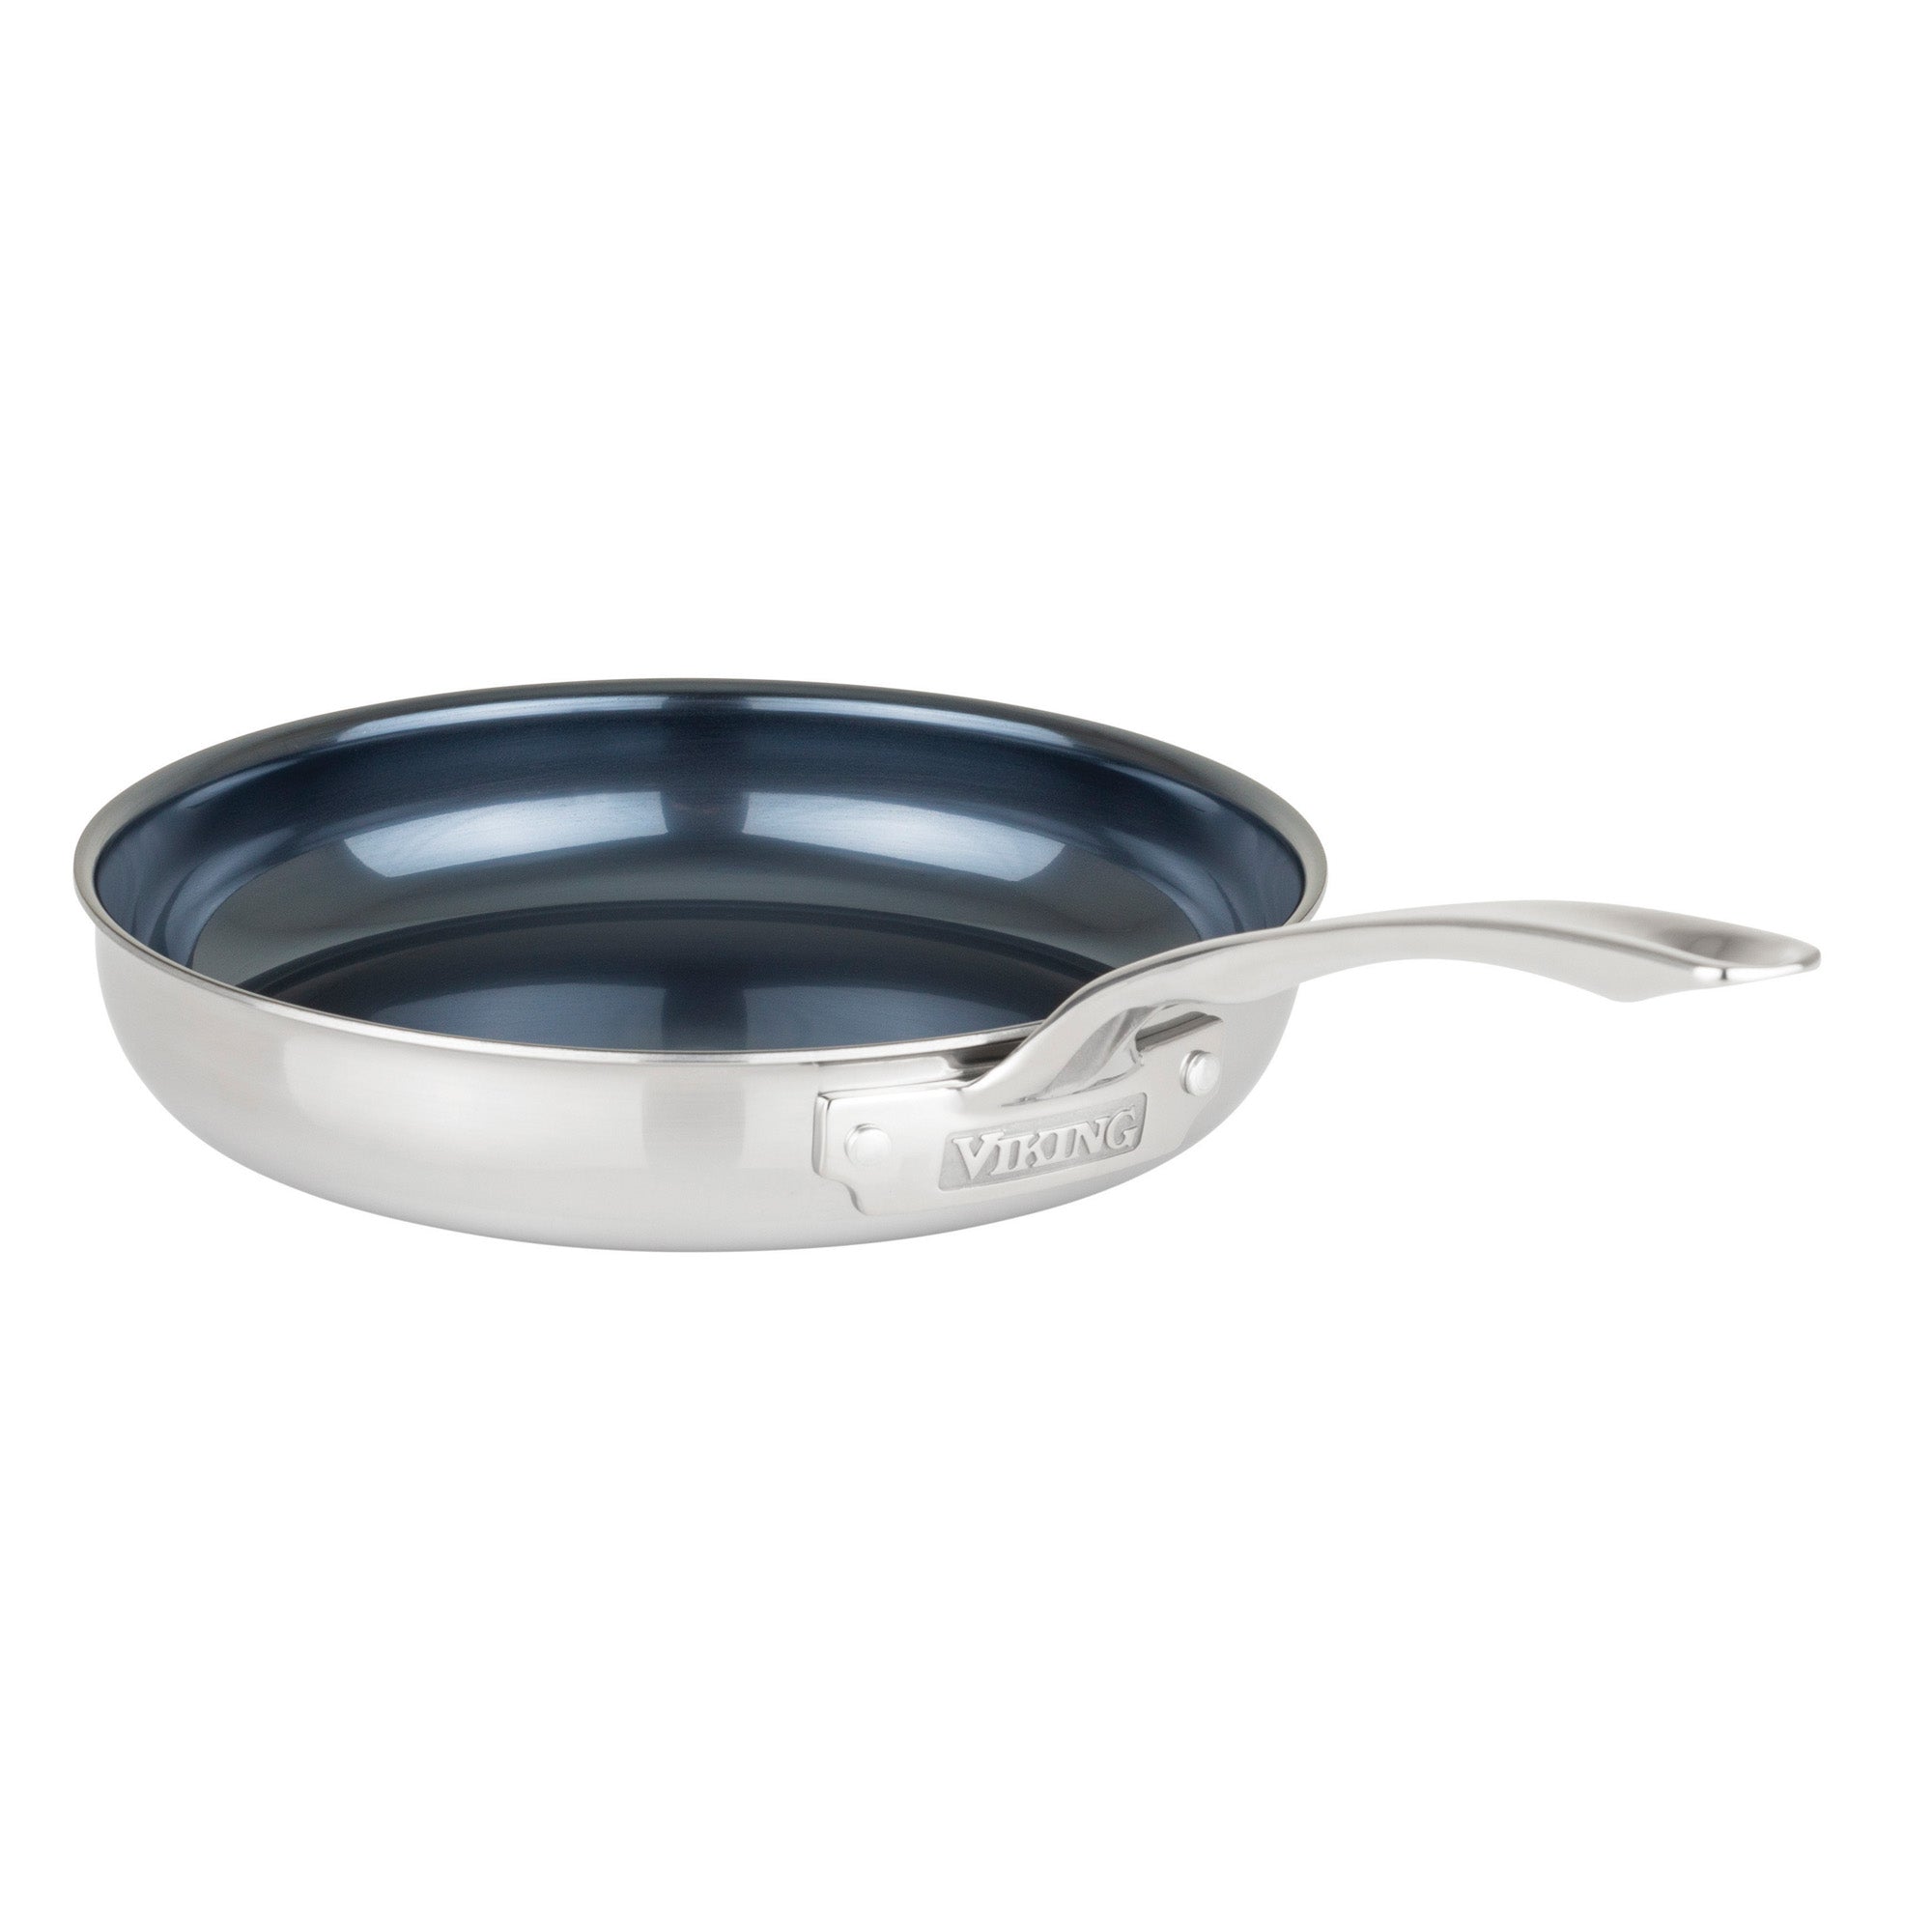 10 Inch Frying Pan